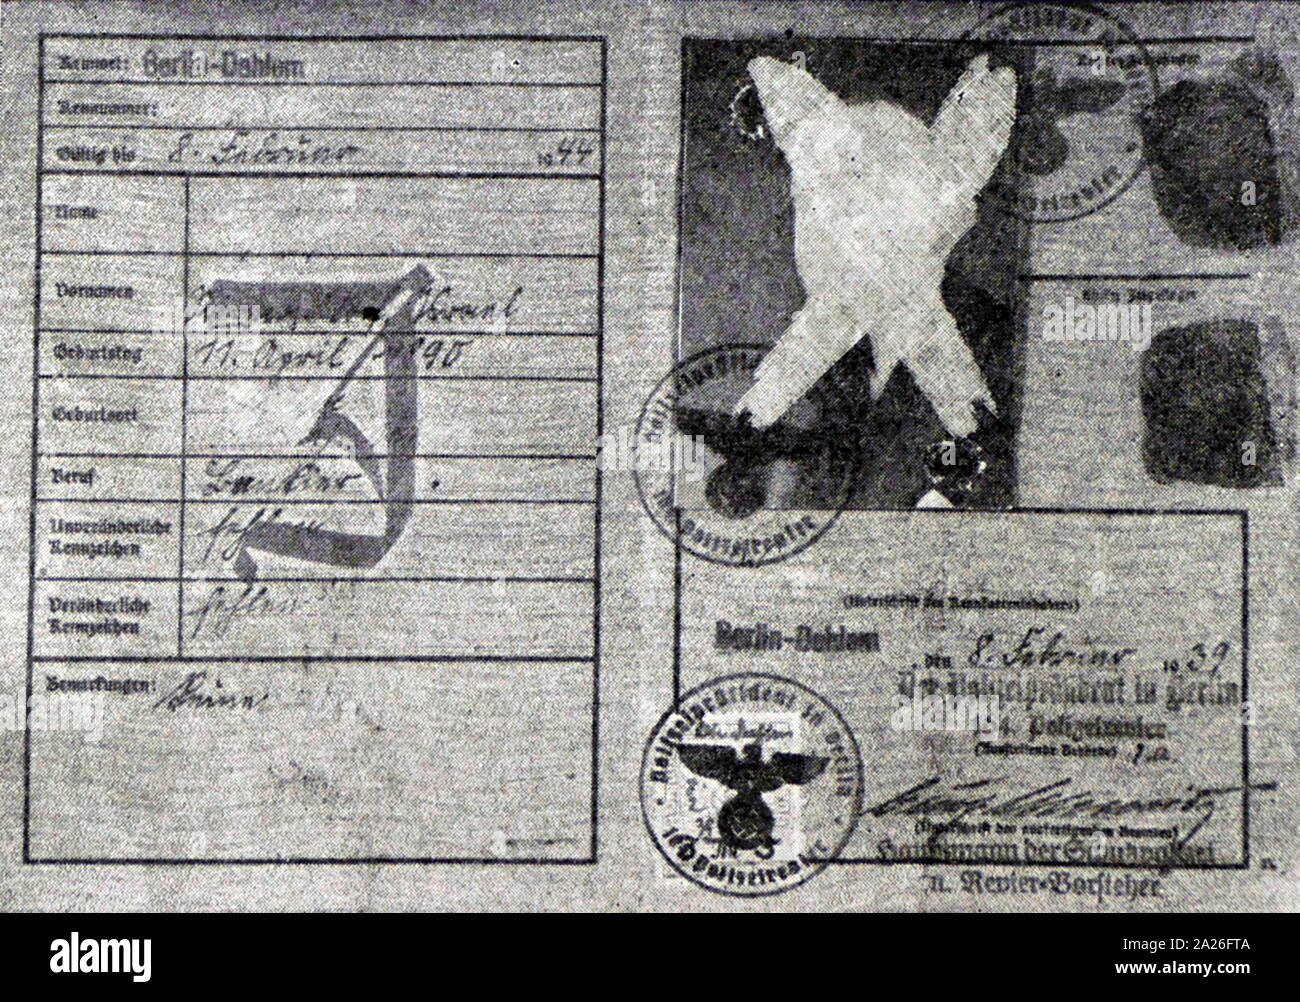 Tarjeta de identidad de las personas judías (Deutsches Reich Kennkarte), marcado con 'J' Judes (judío), la Alemania Nazi, 1938 Foto de stock